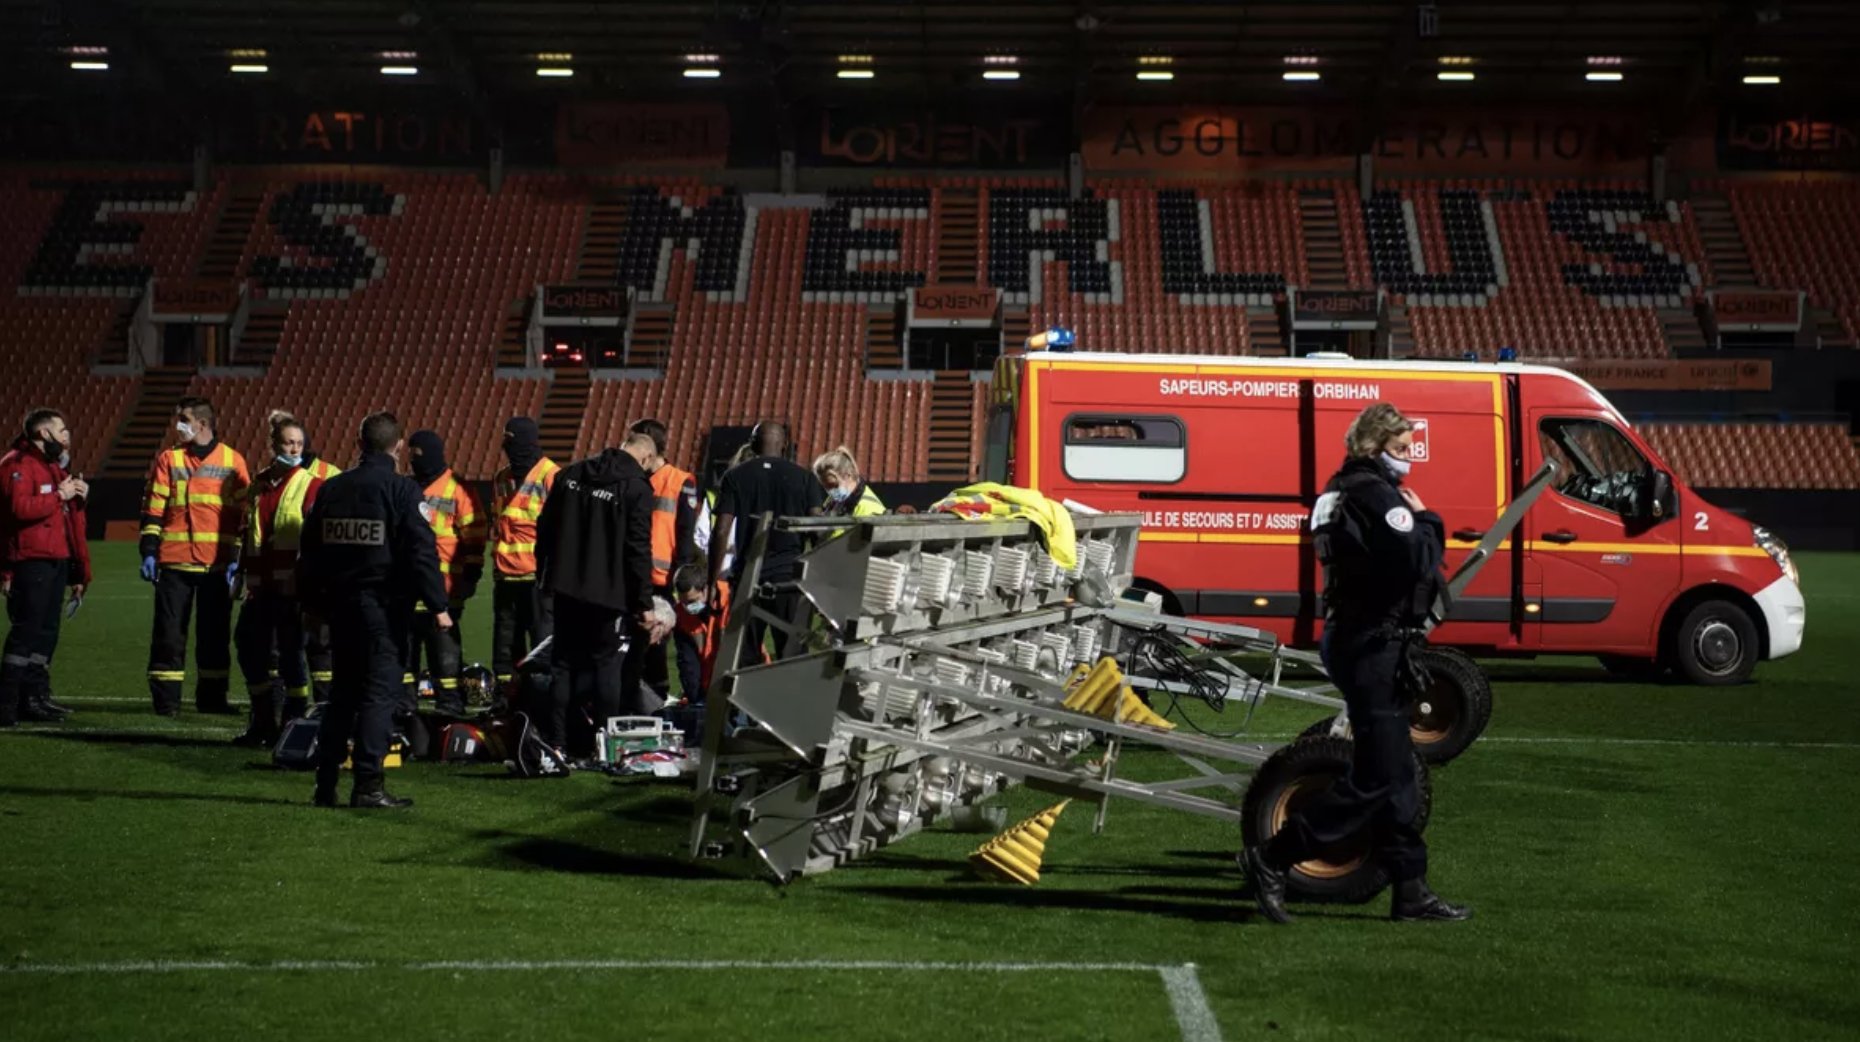 Śmiertelny wypadek na stadionie. Chwilę po meczu na boisko spadły reflektory!